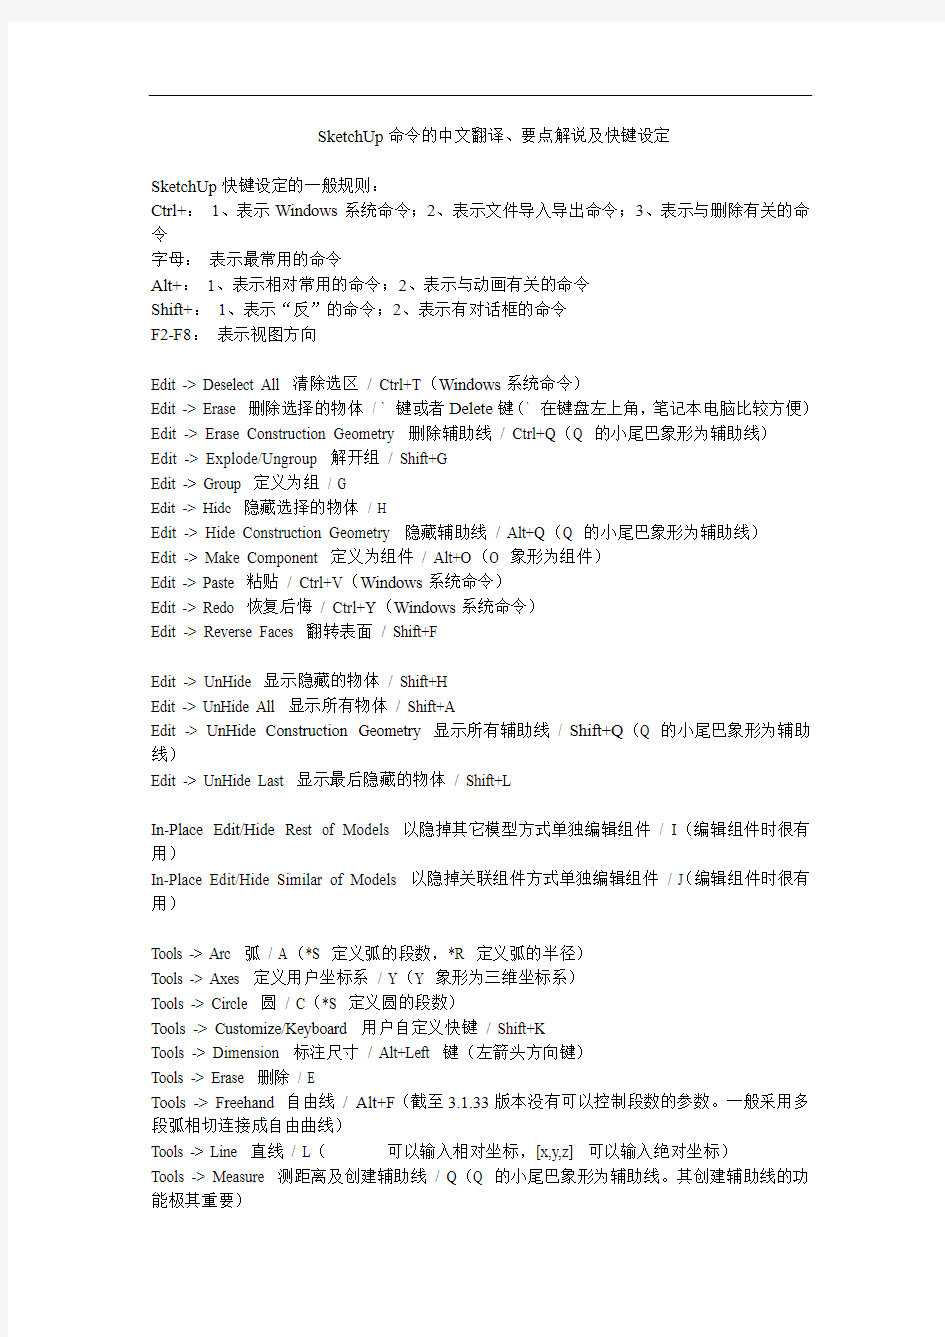 SketchUp命令的中文翻译、要点解说及快键设定